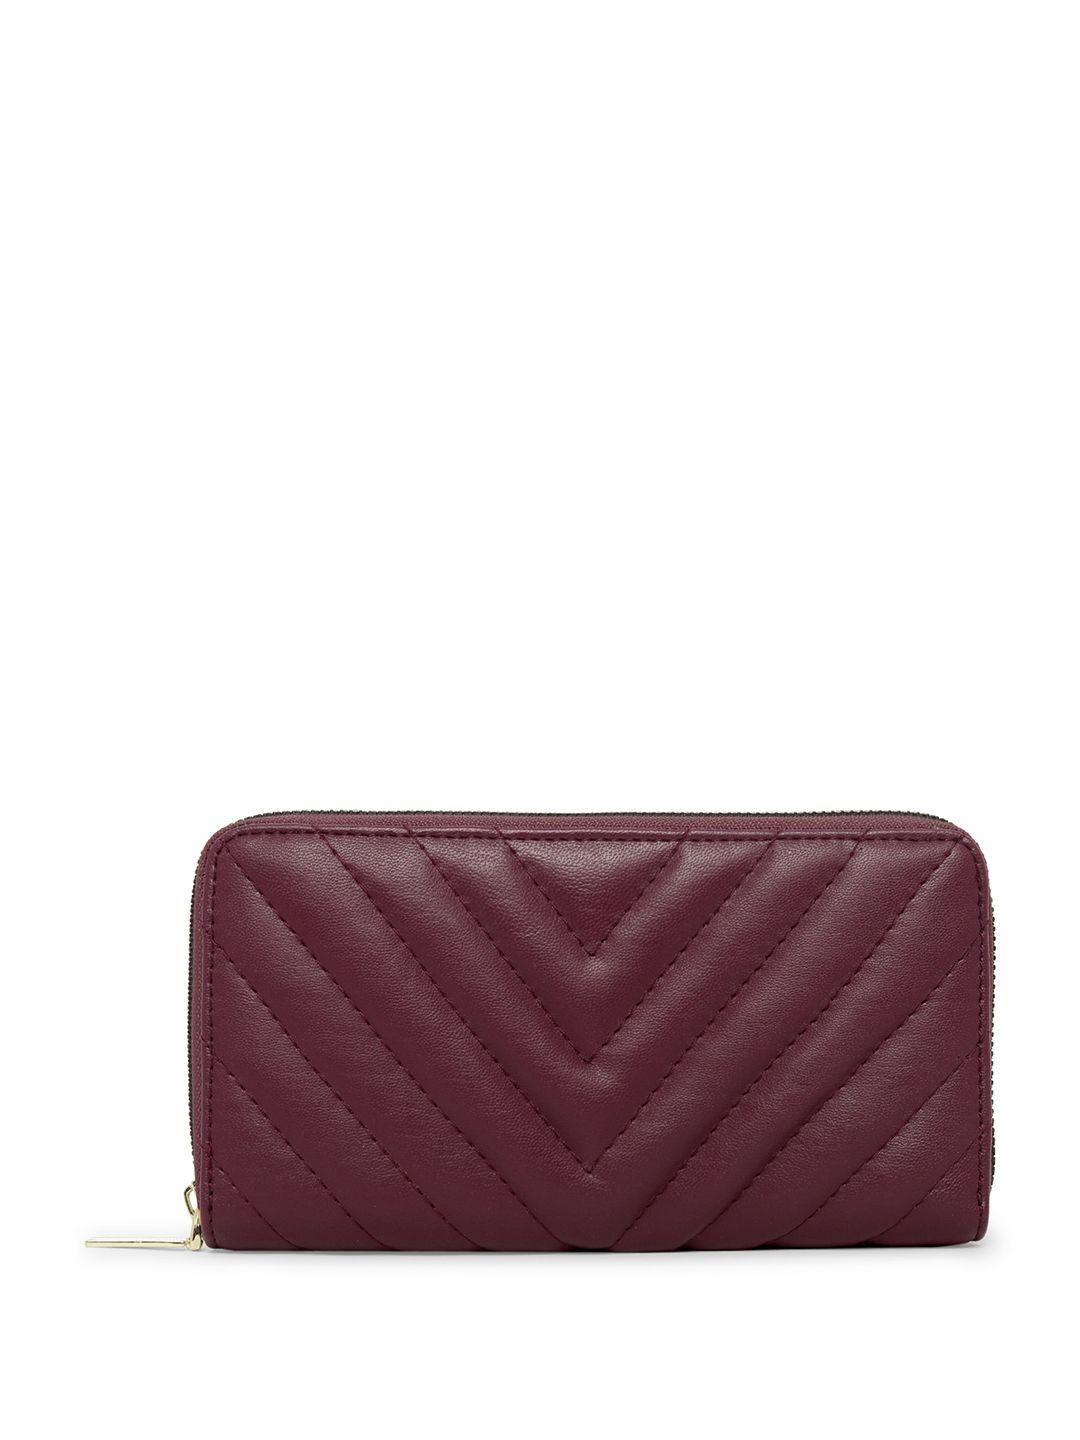 dressberry women burgundy striped zip around wallet